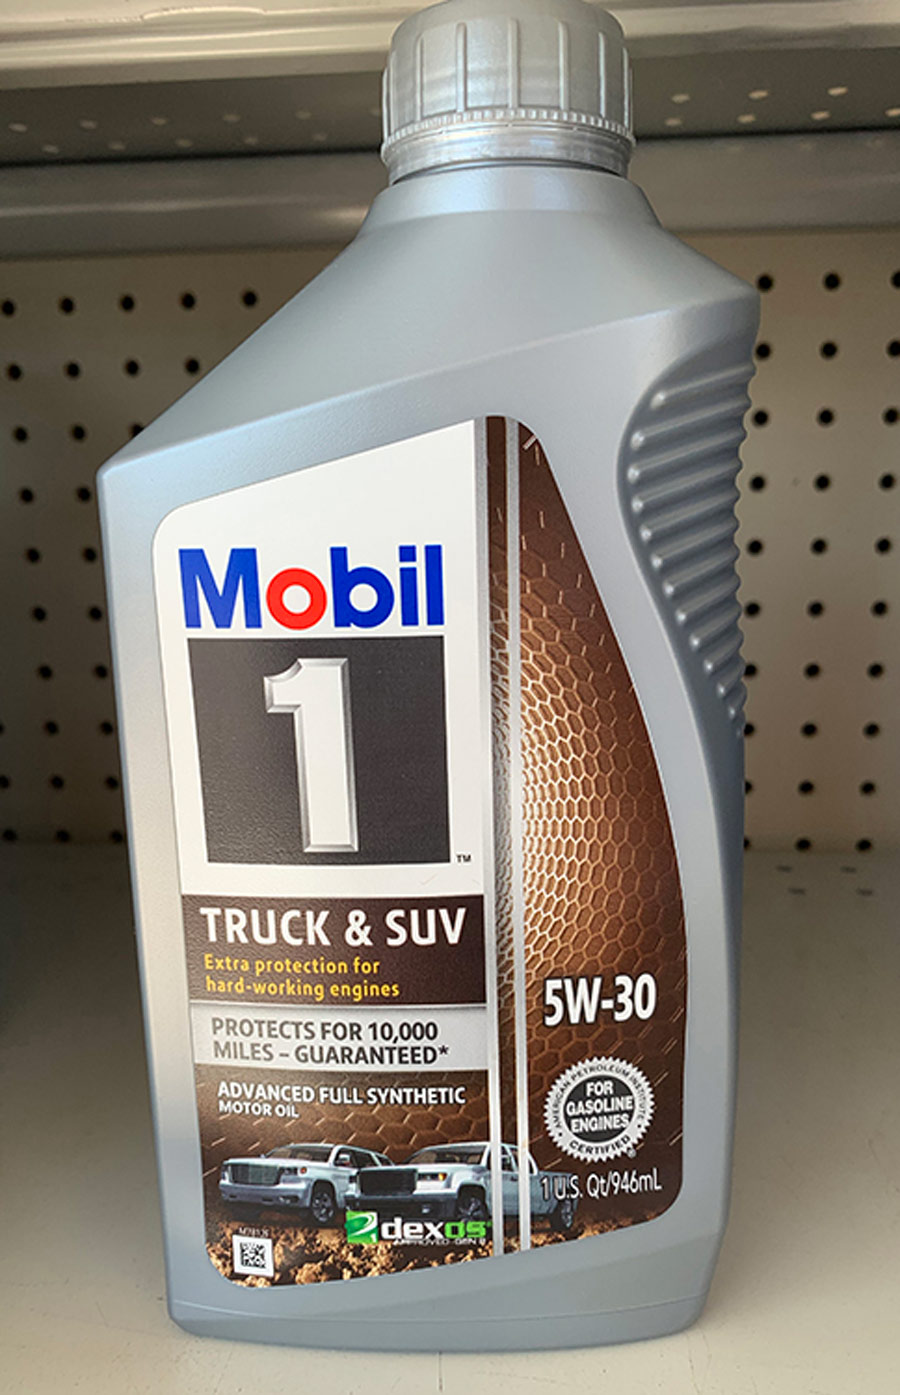 Mobil oil on the shelf